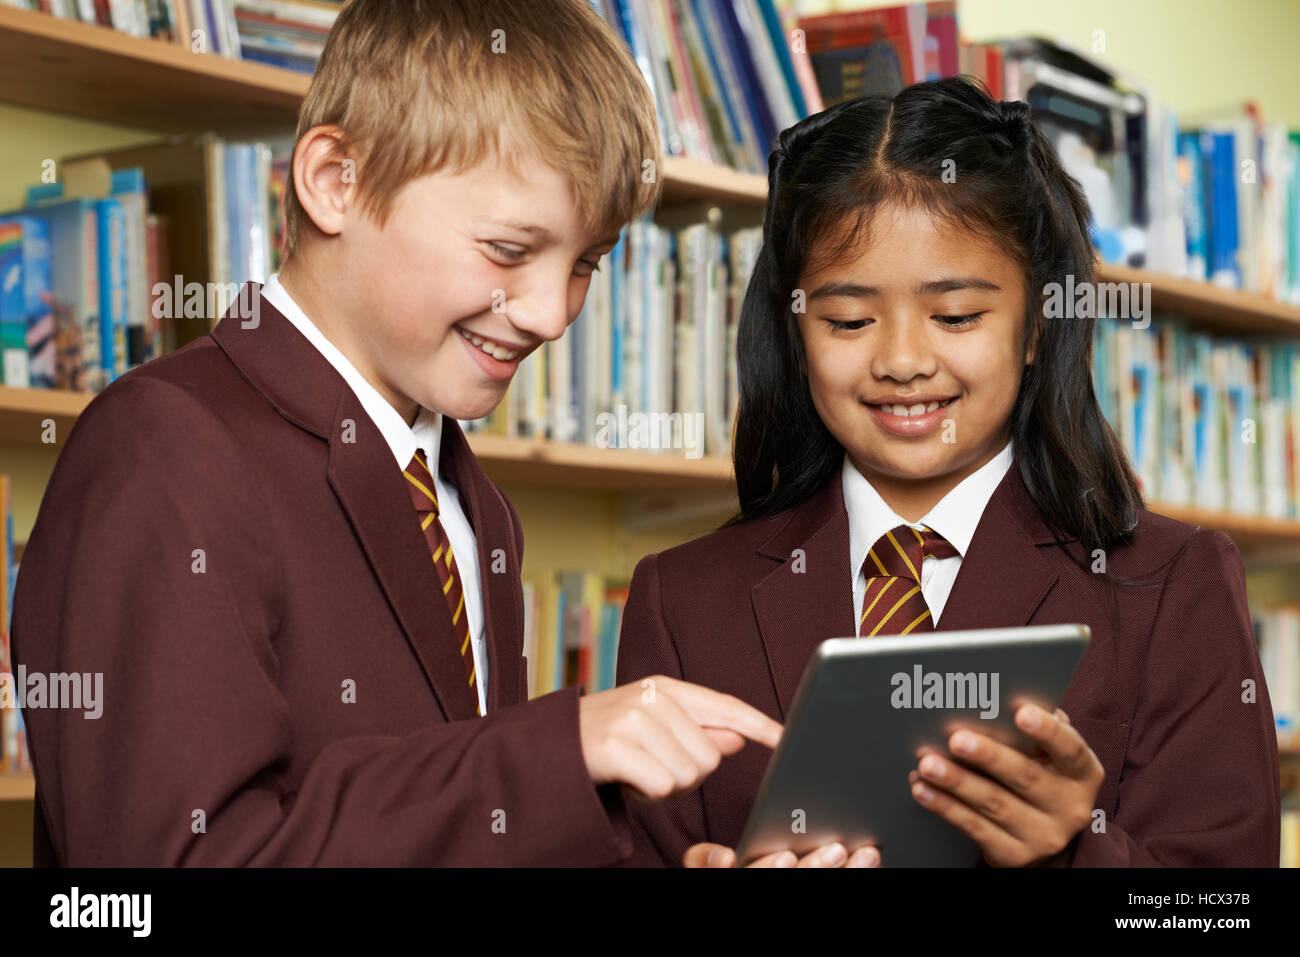 Los alumnos vistiendo uniforme escolar utilizando Tablet Digital en la biblioteca Foto de stock